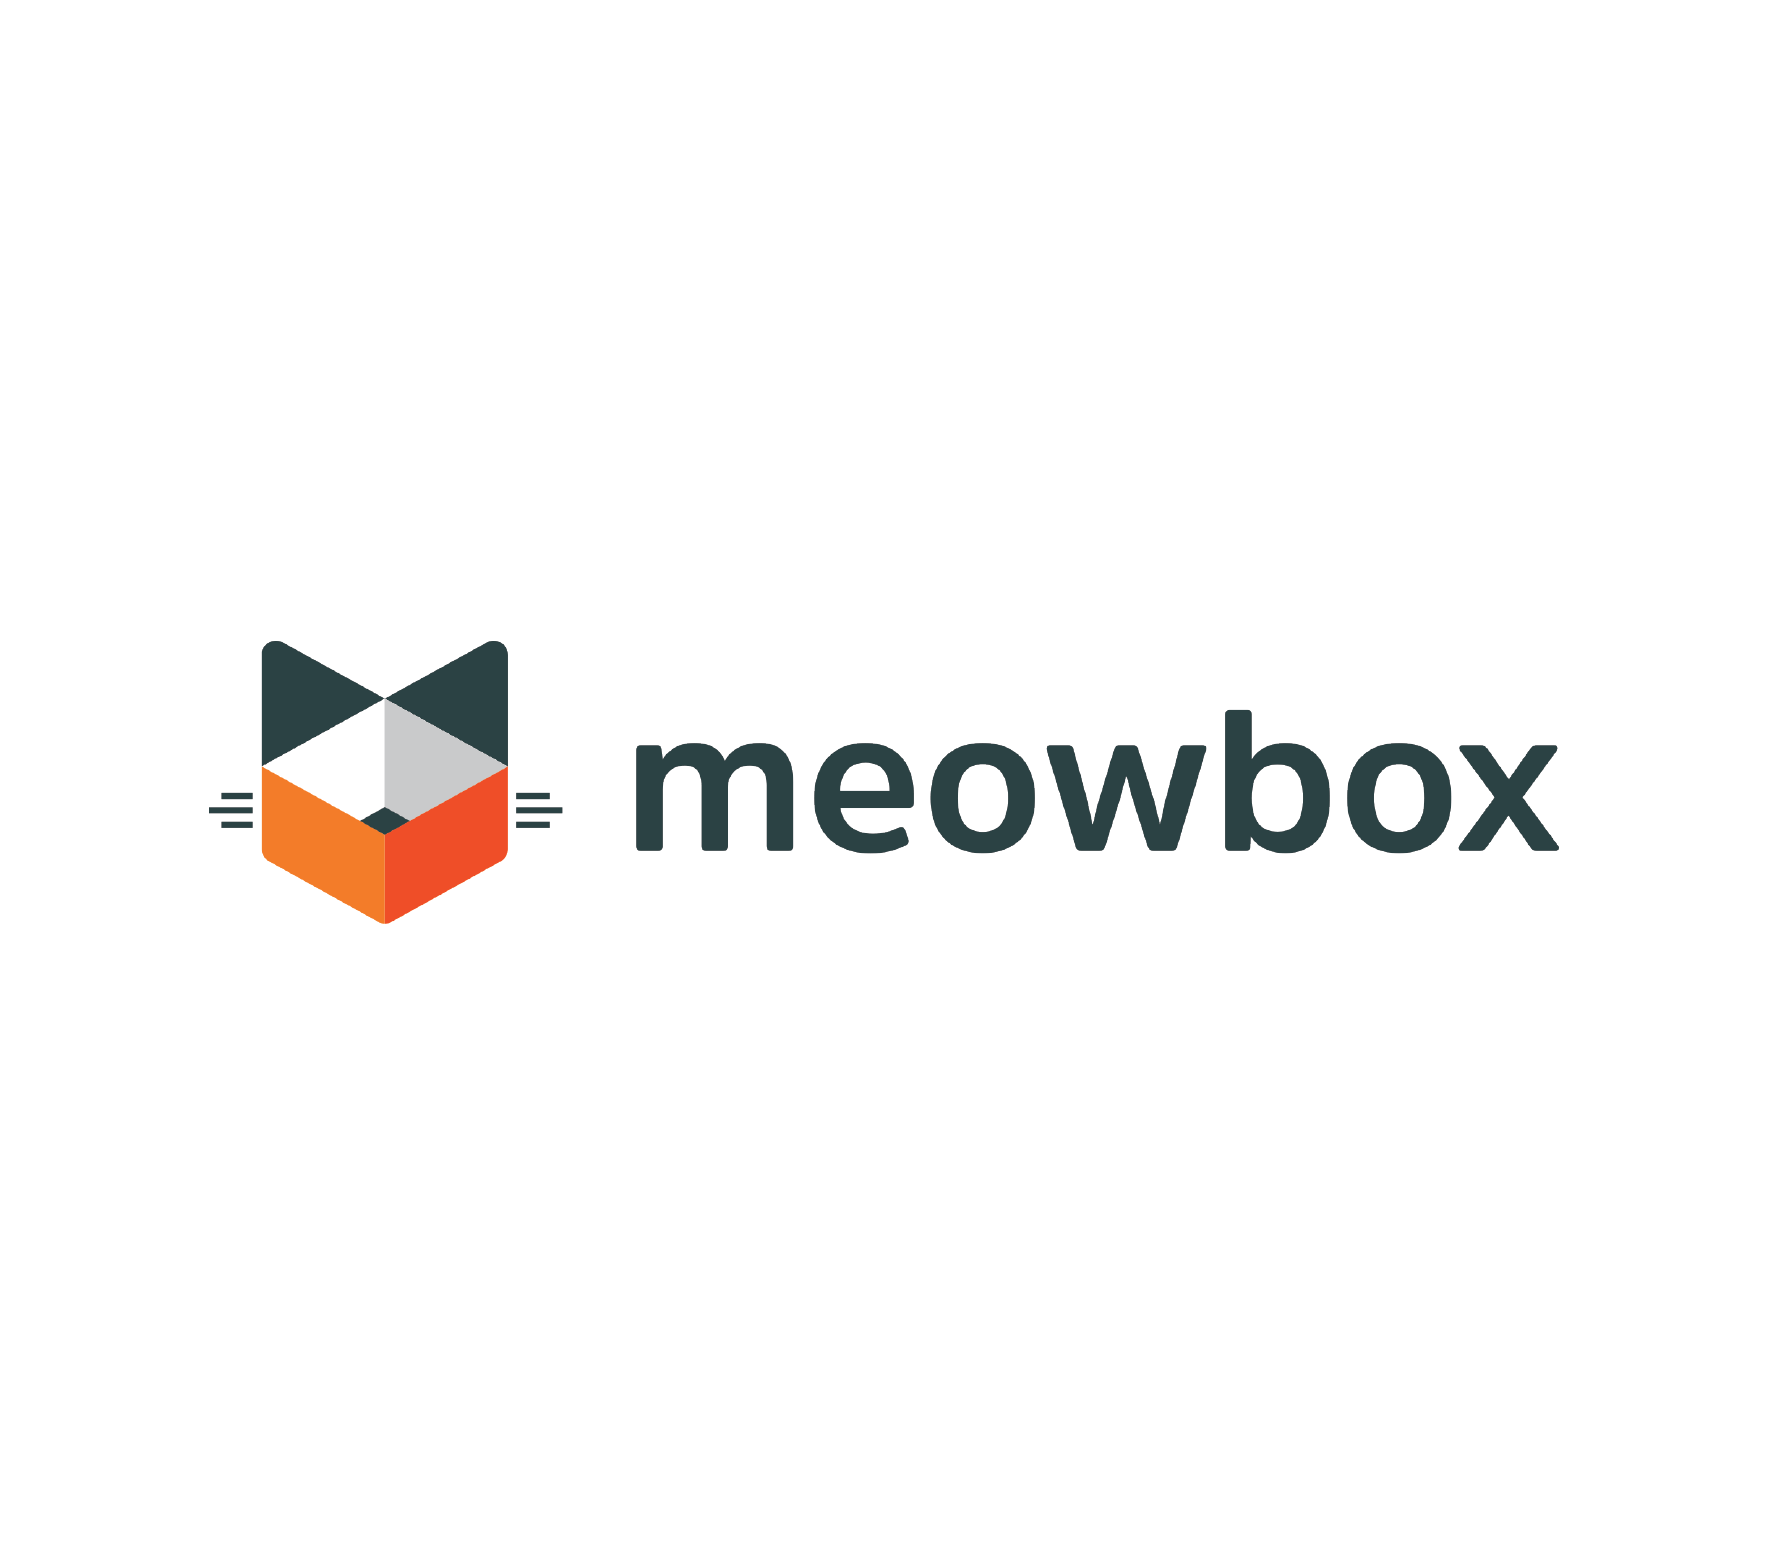 meowbox full logo.png